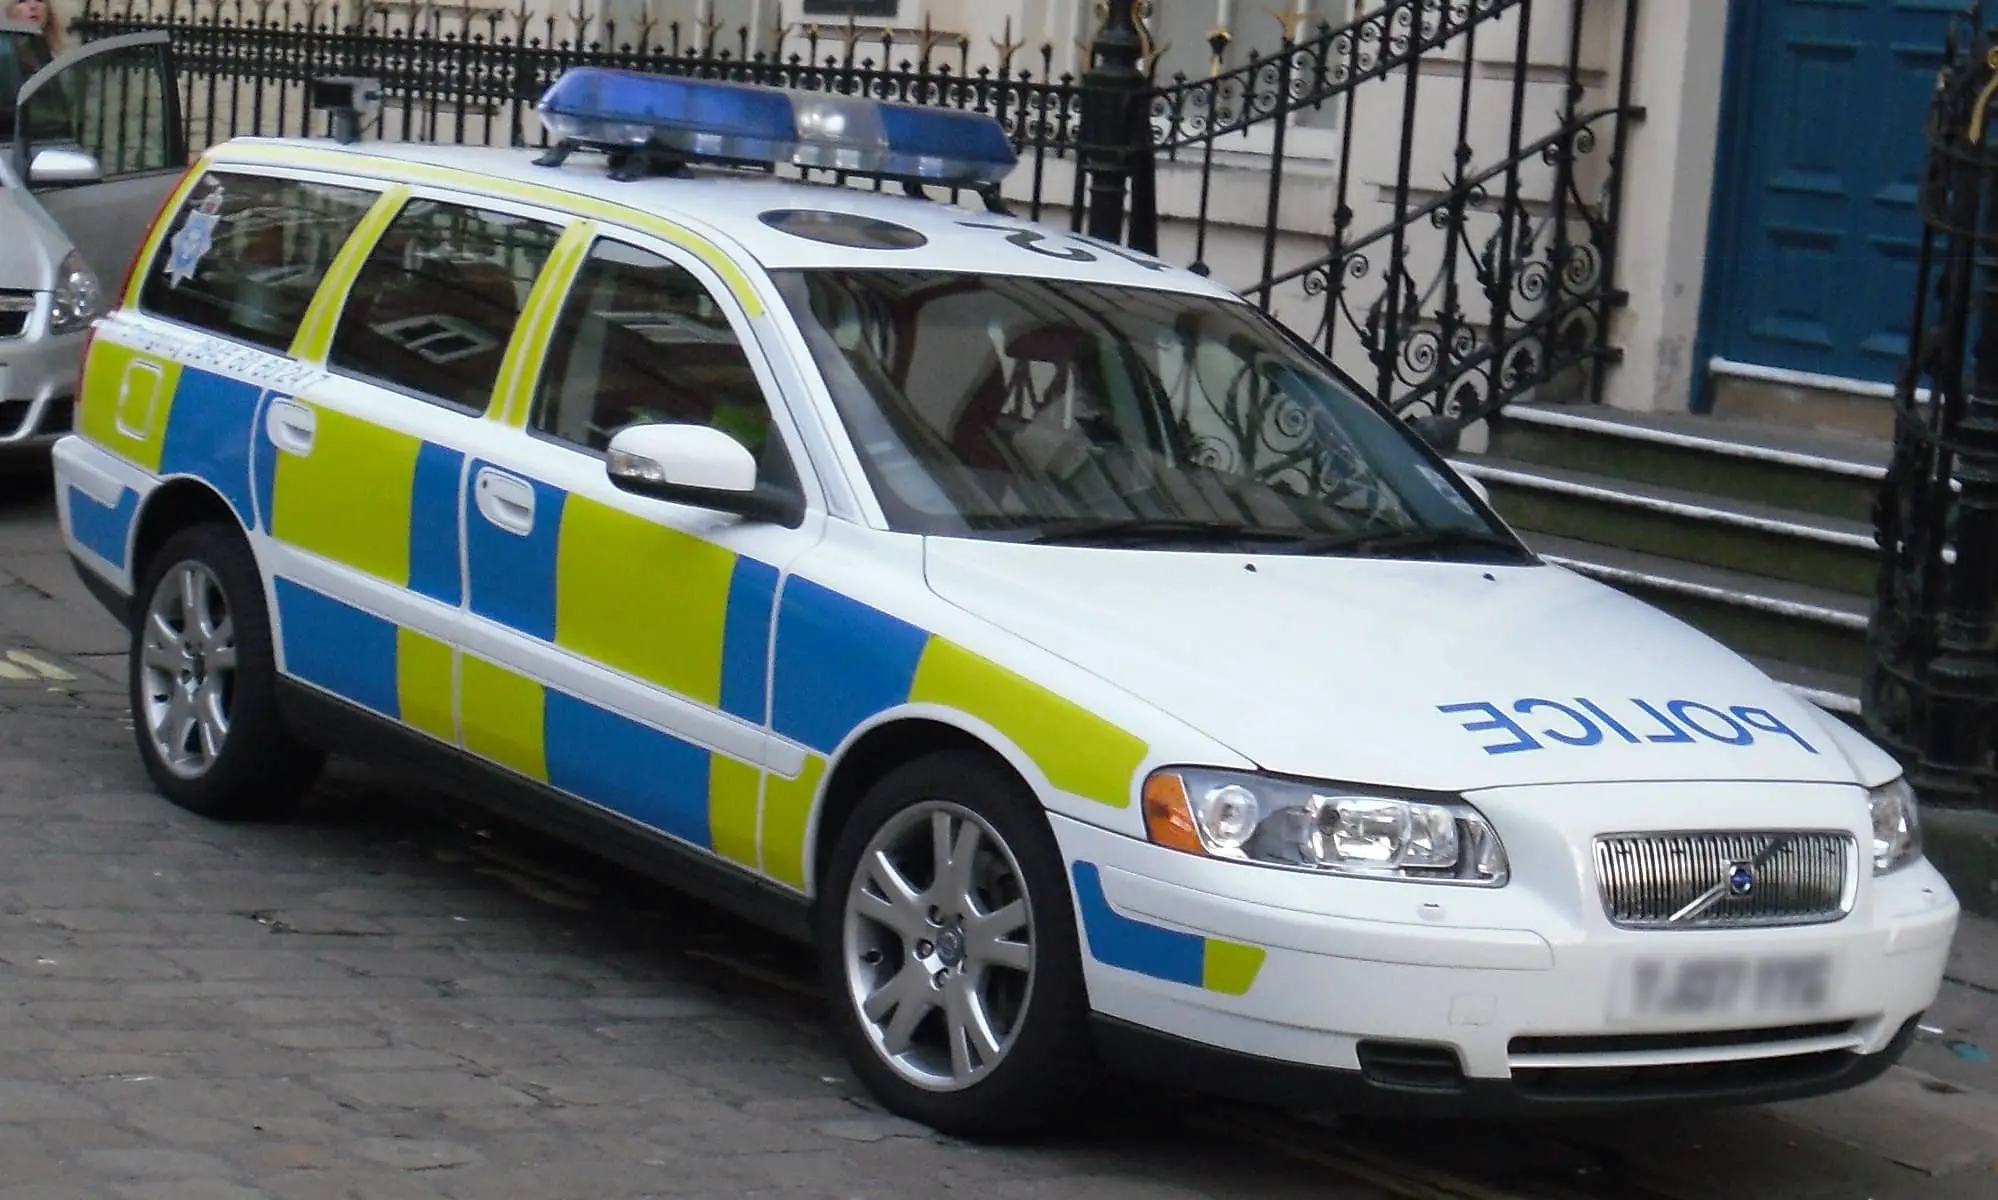 RPU police car